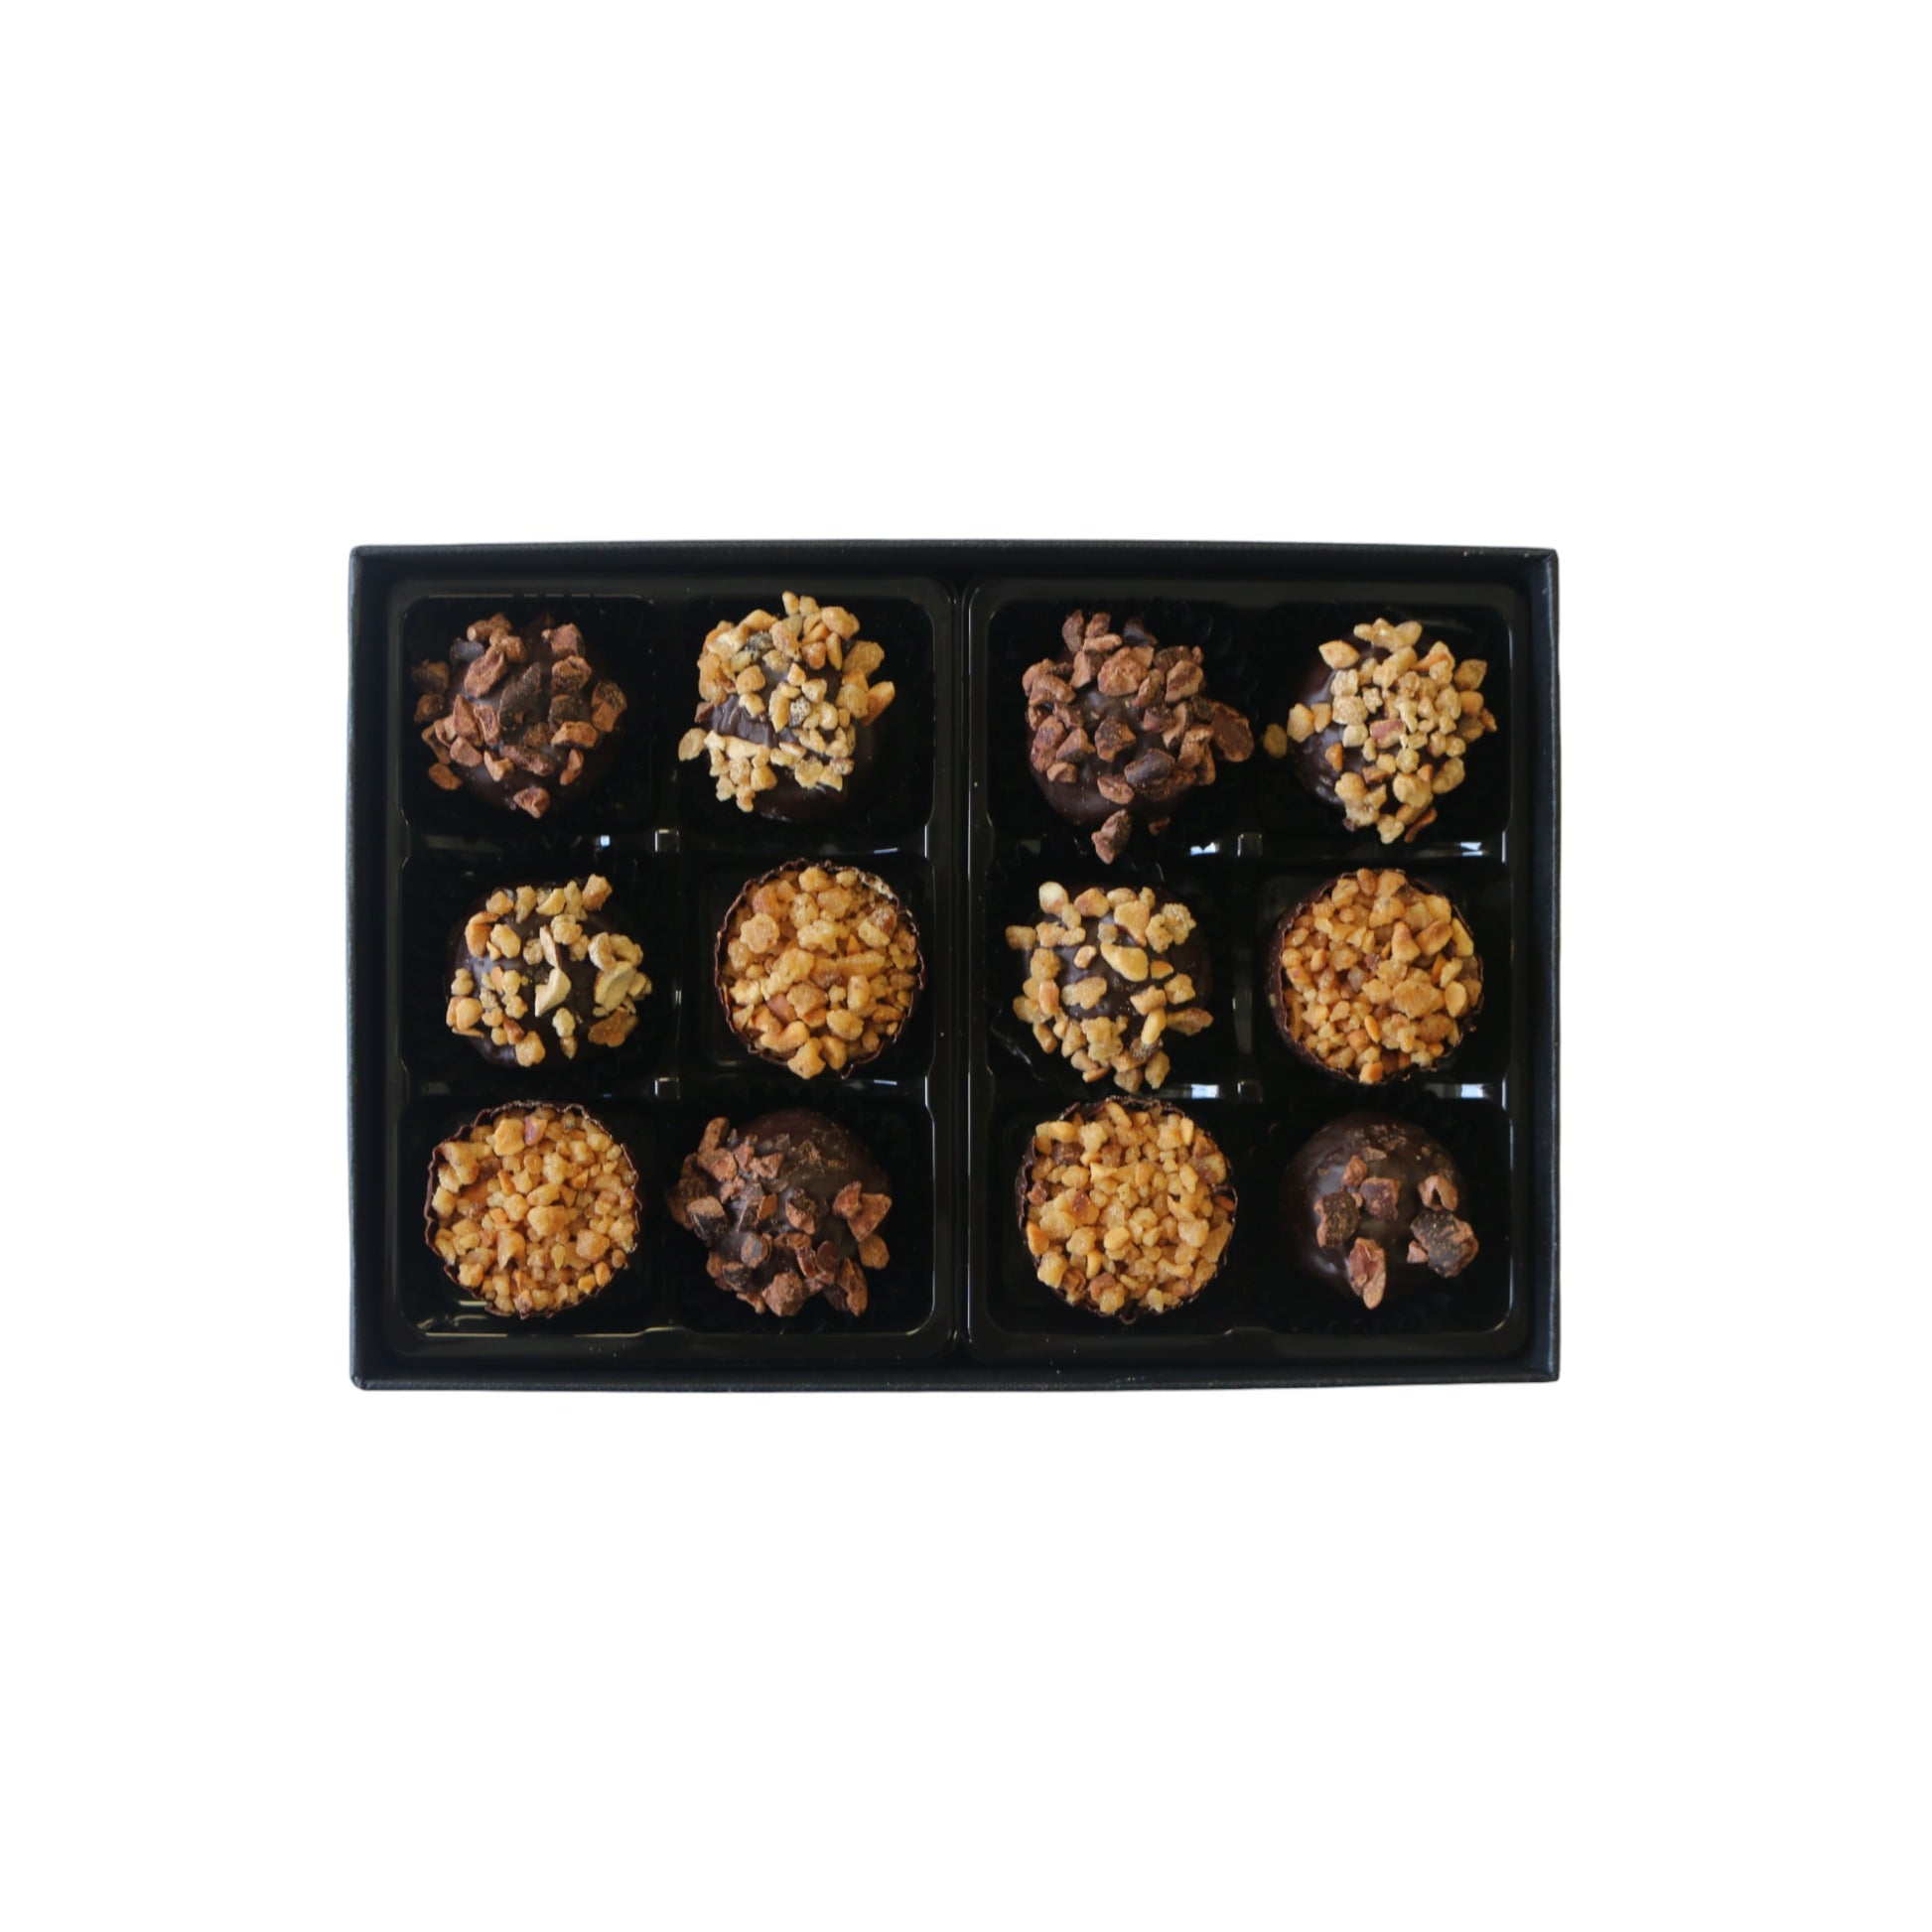 Plant based truffle selection - Sam Joseph chocolates